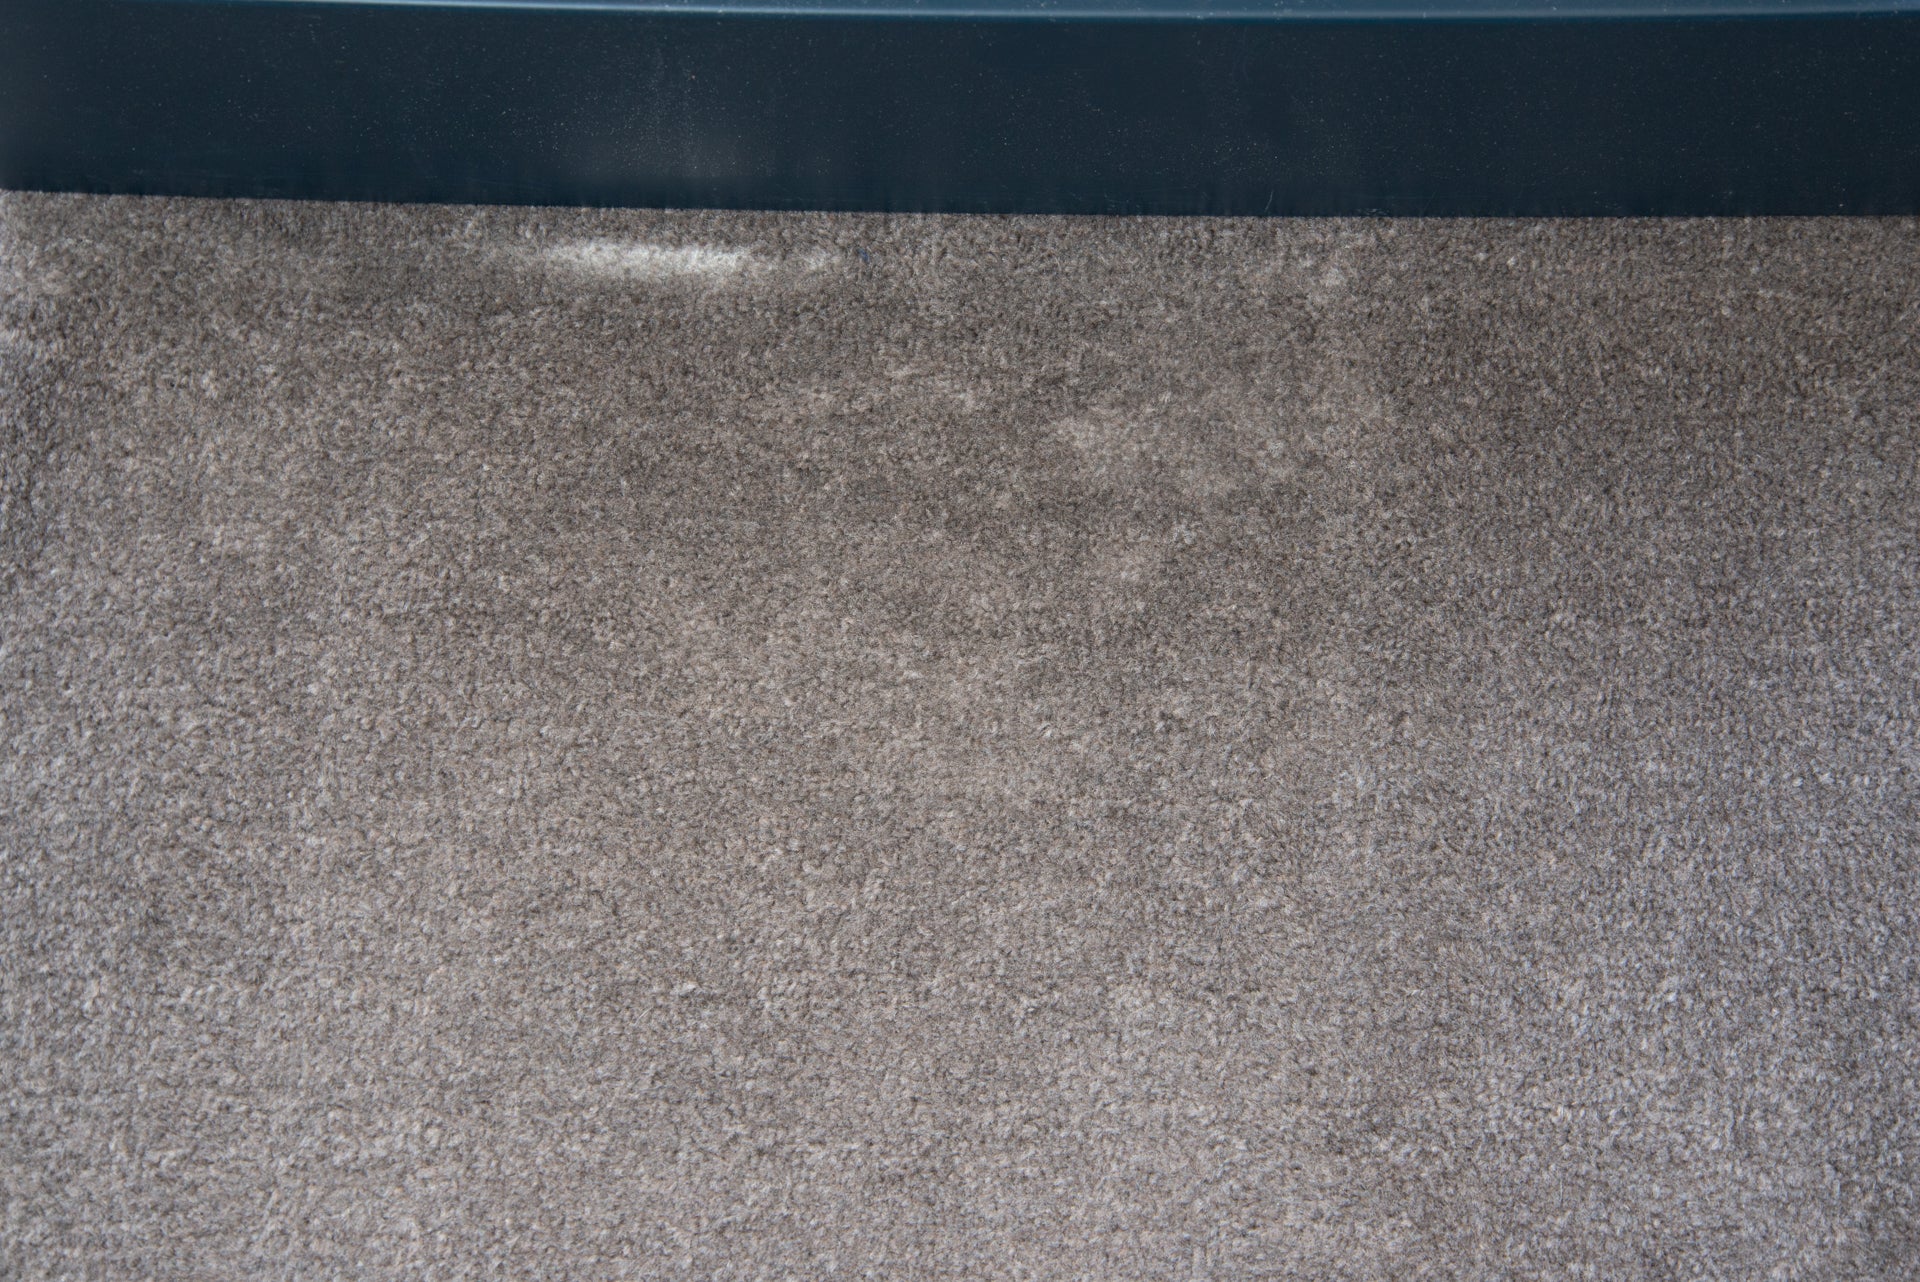 Roidmi X20 clean carpet more power